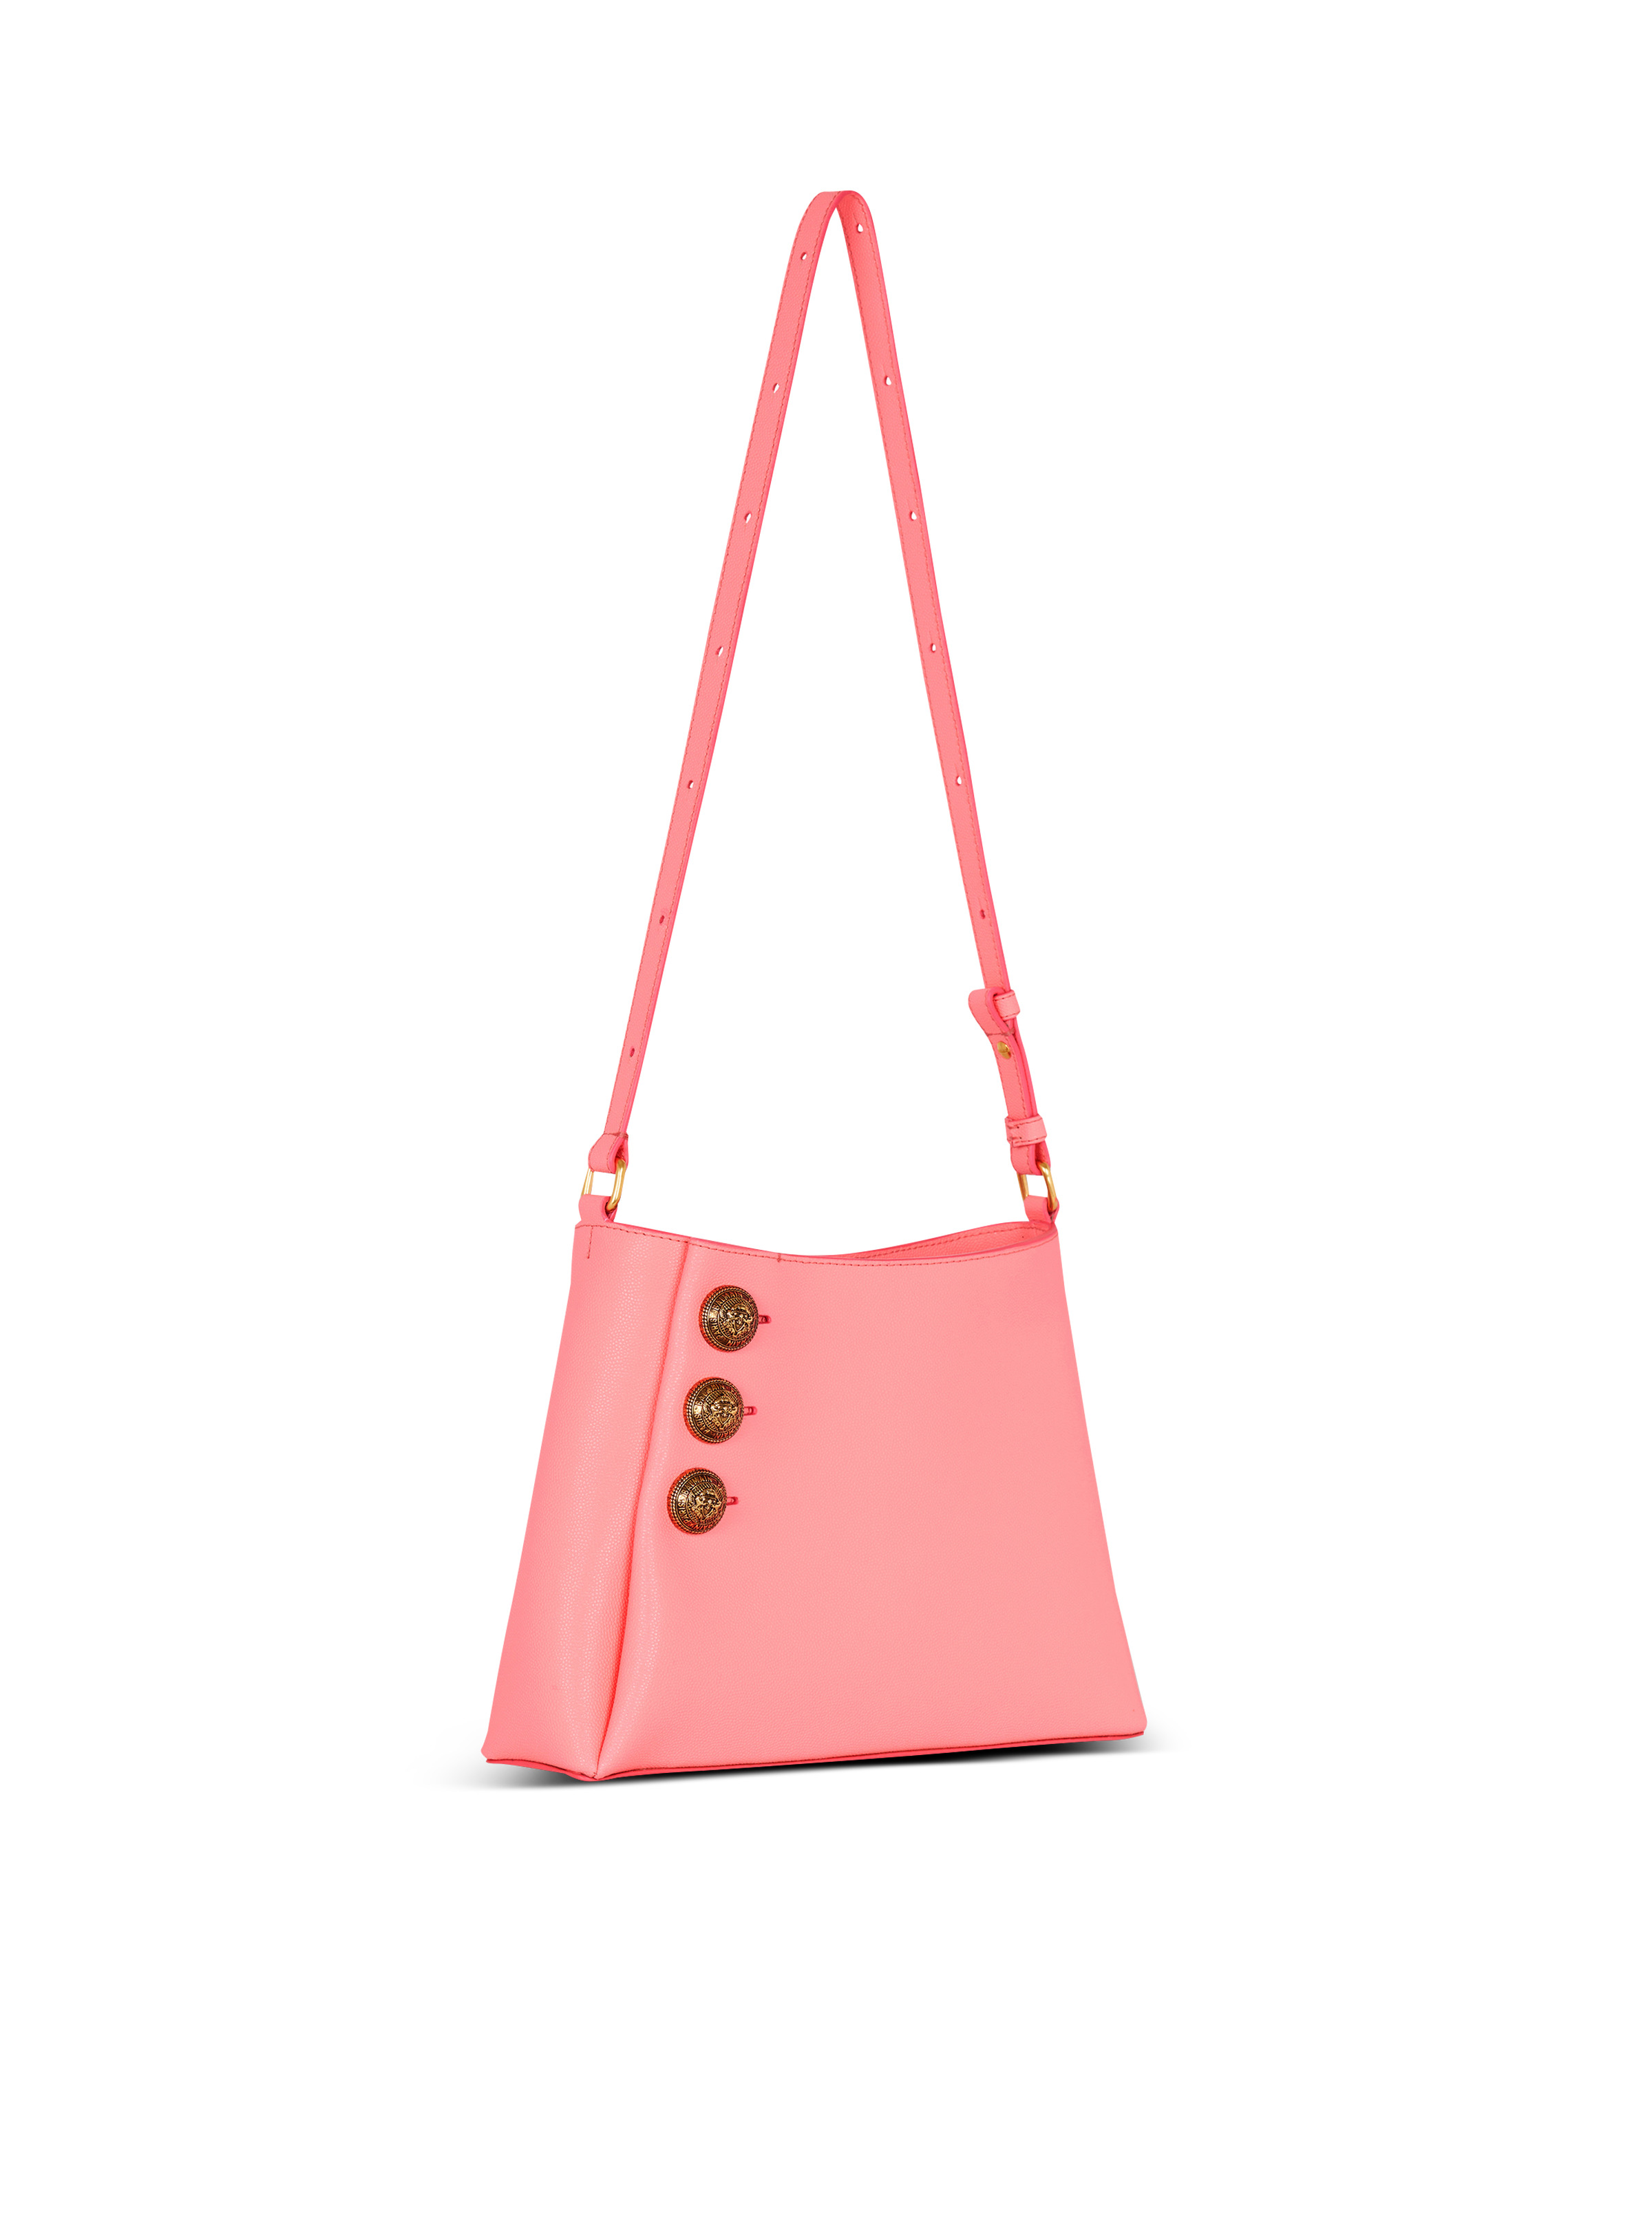 Emblème handbag in grained leather - 3